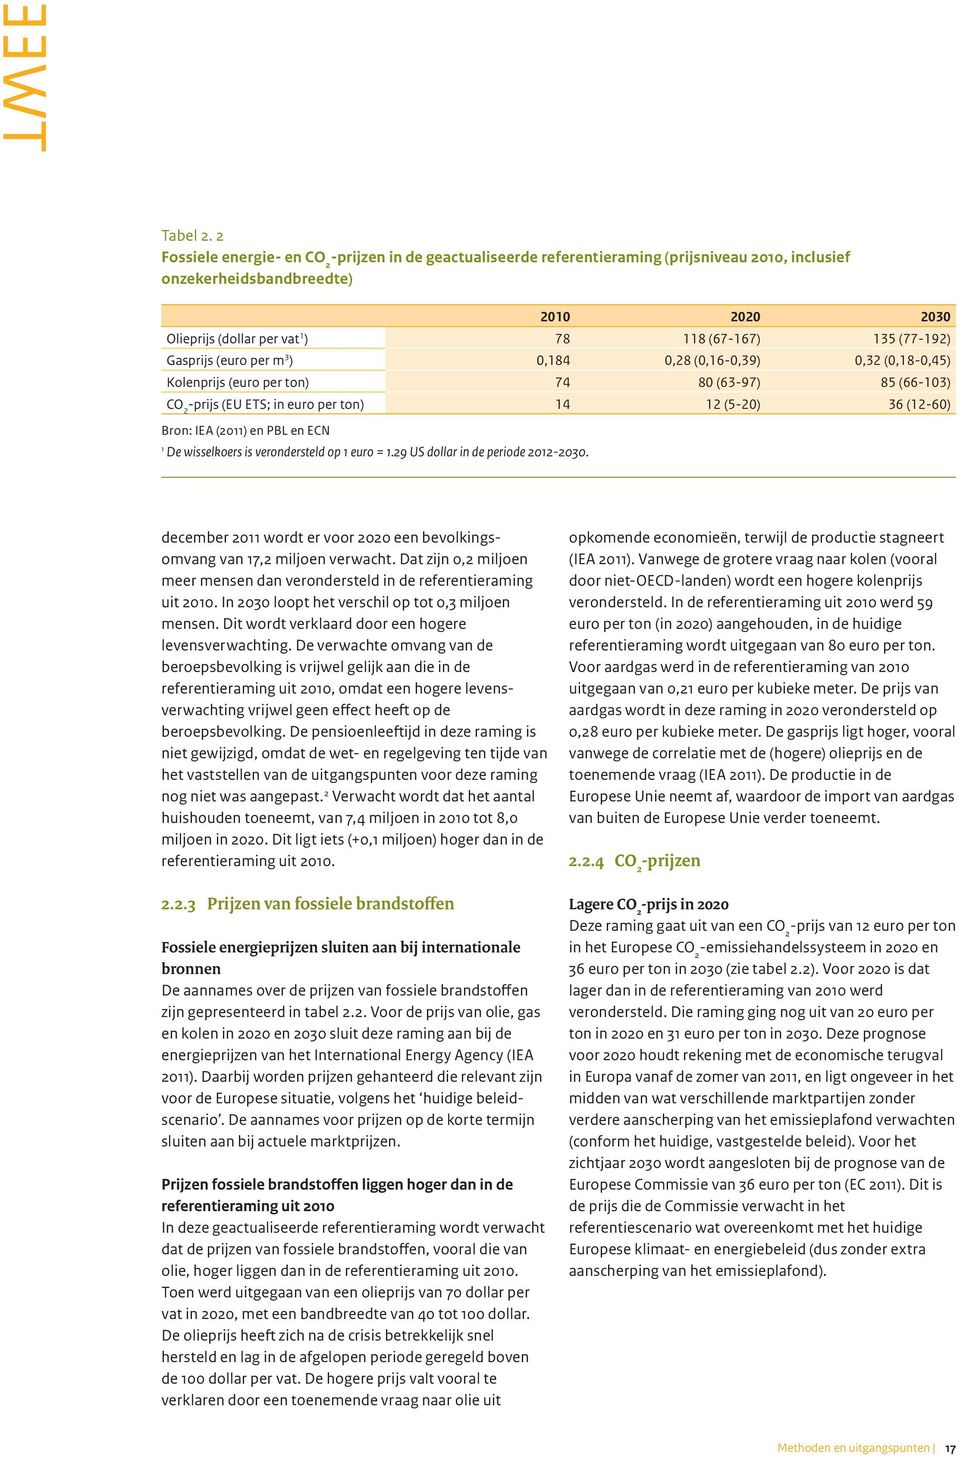 (77-192) Gasprijs (euro per m 3 ) 0,184 0,28 (0,16-0,39) 0,32 (0,18-0,45) Kolenprijs (euro per ton) 74 80 (63-97) 85 (66-103) CO 2 -prijs (EU ETS; in euro per ton) 14 12 (5-20) 36 (12-60) Bron: IEA